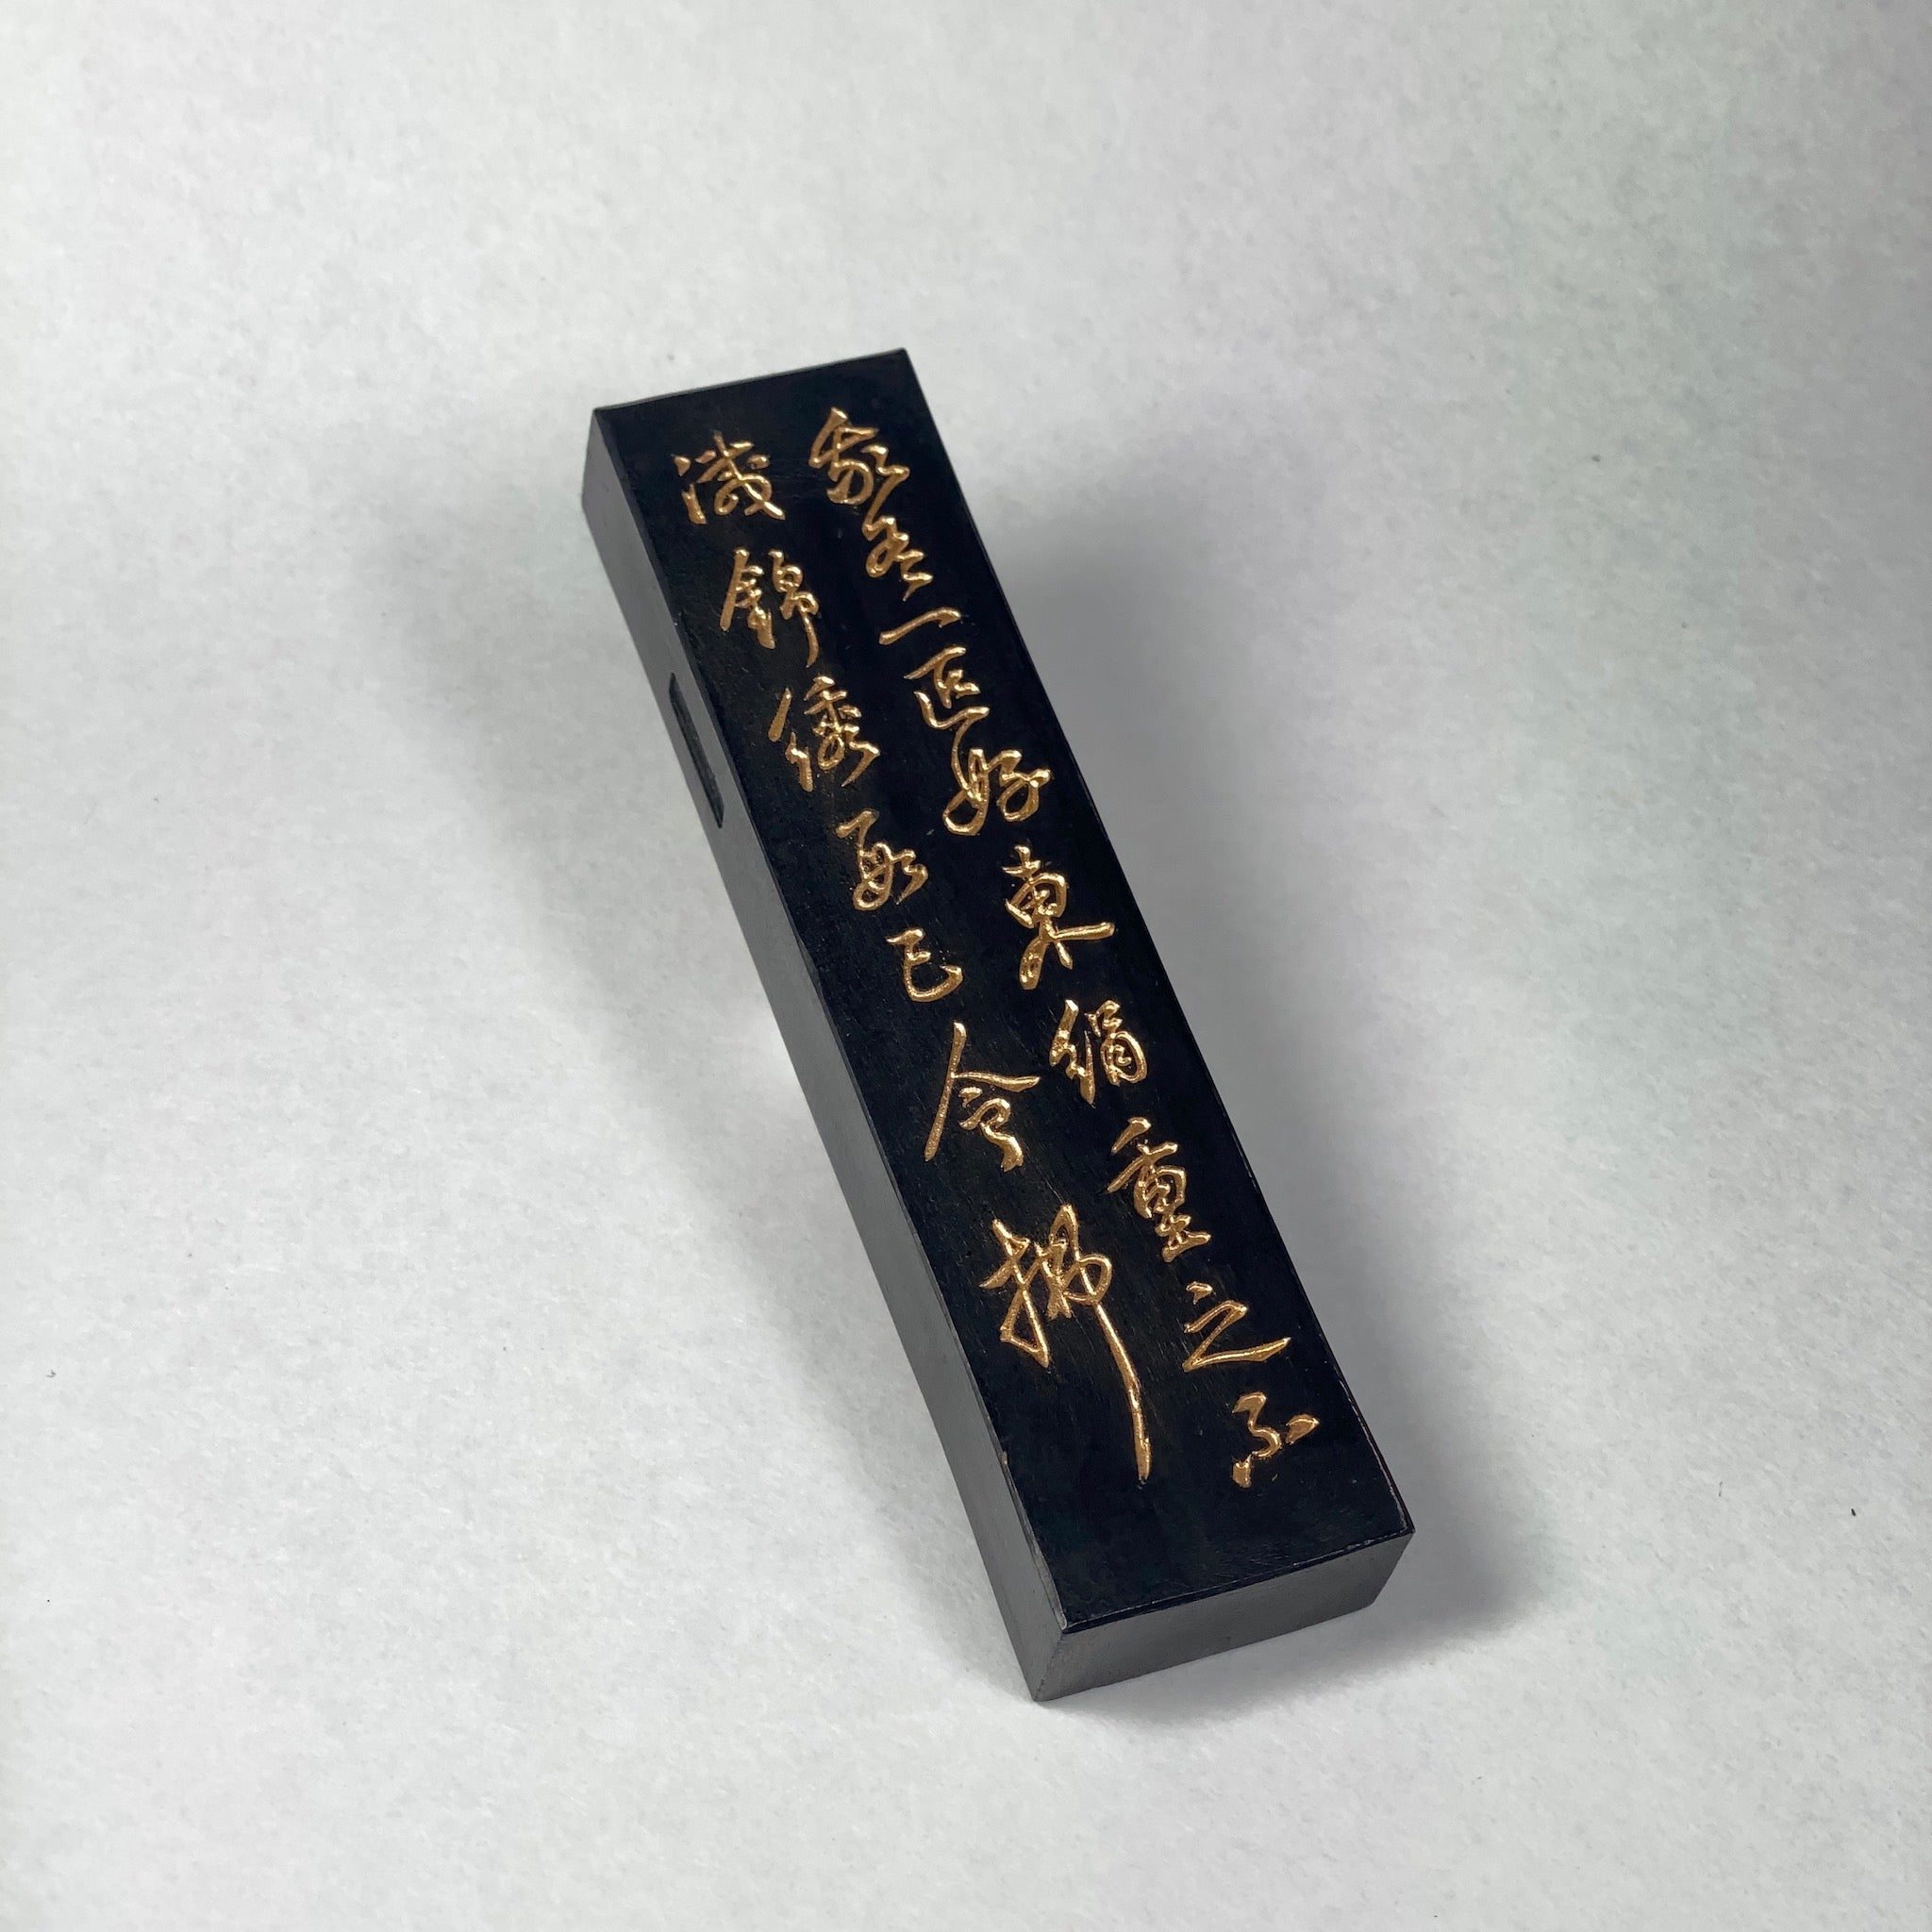 我有 (Gayu  松烟墨 松園墨 由古梅园(古梅園)制造 ) manufactured by KOBAIEN, Nara, Japan